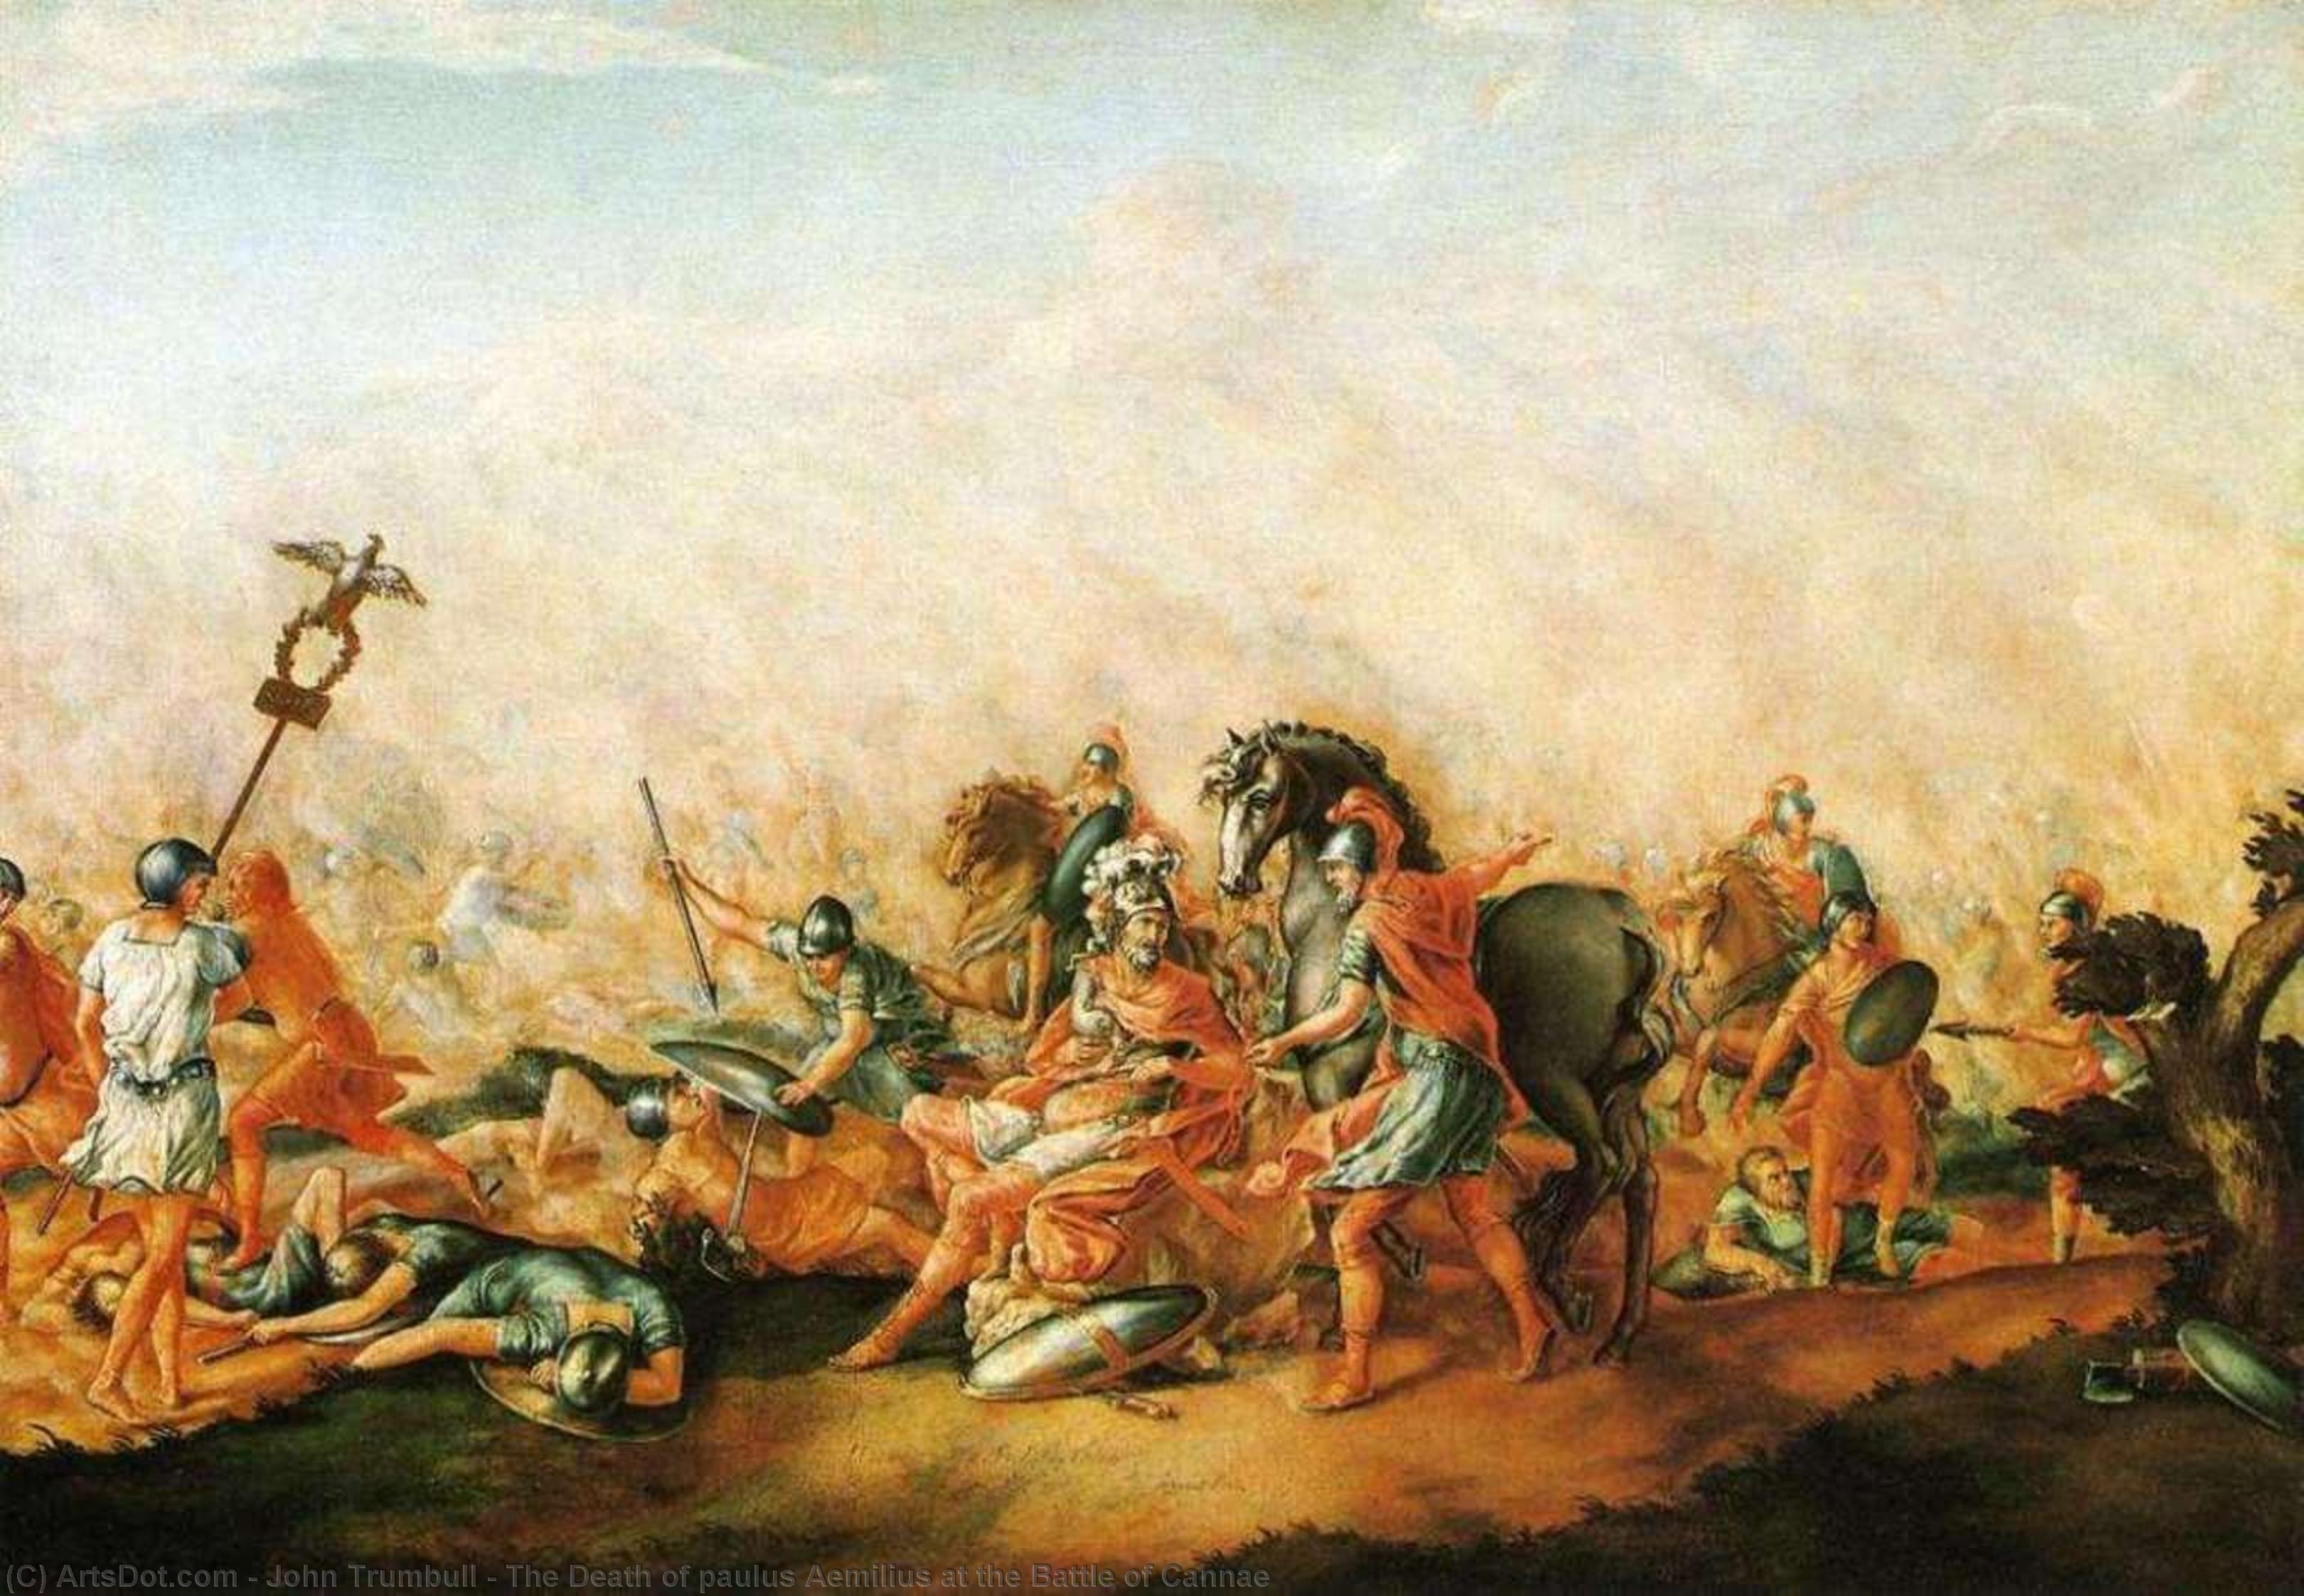 顺序 手工油畫 坎纳战役中保罗斯·艾米利乌斯的死, 1773 通过 John Trumbull (1756-1843, United Kingdom) | ArtsDot.com